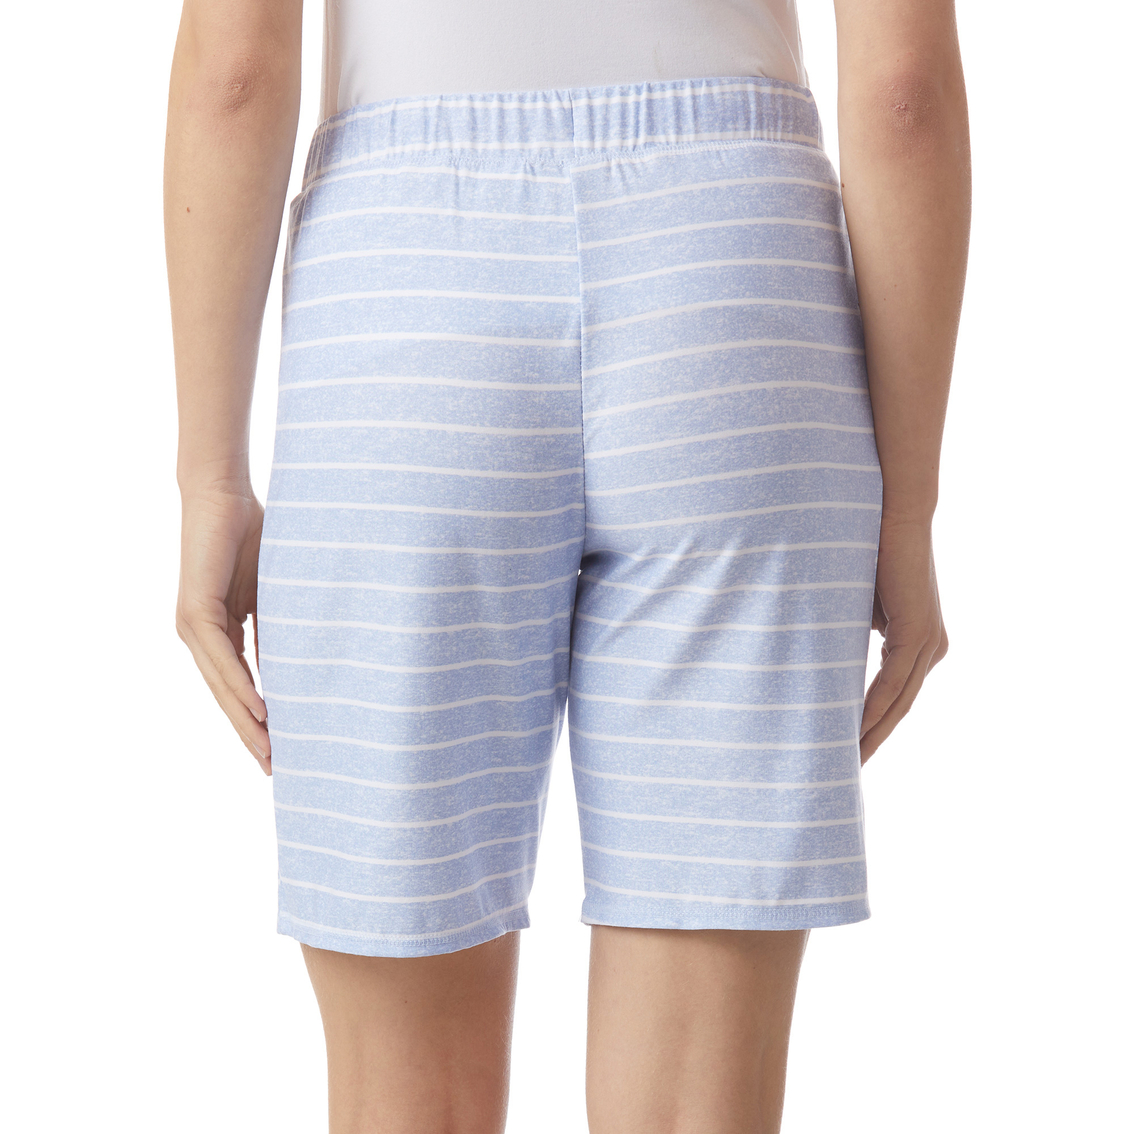 Jaclyn Bermuda Shorts 2 Pk. | Pajamas & Robes | Clothing & Accessories ...